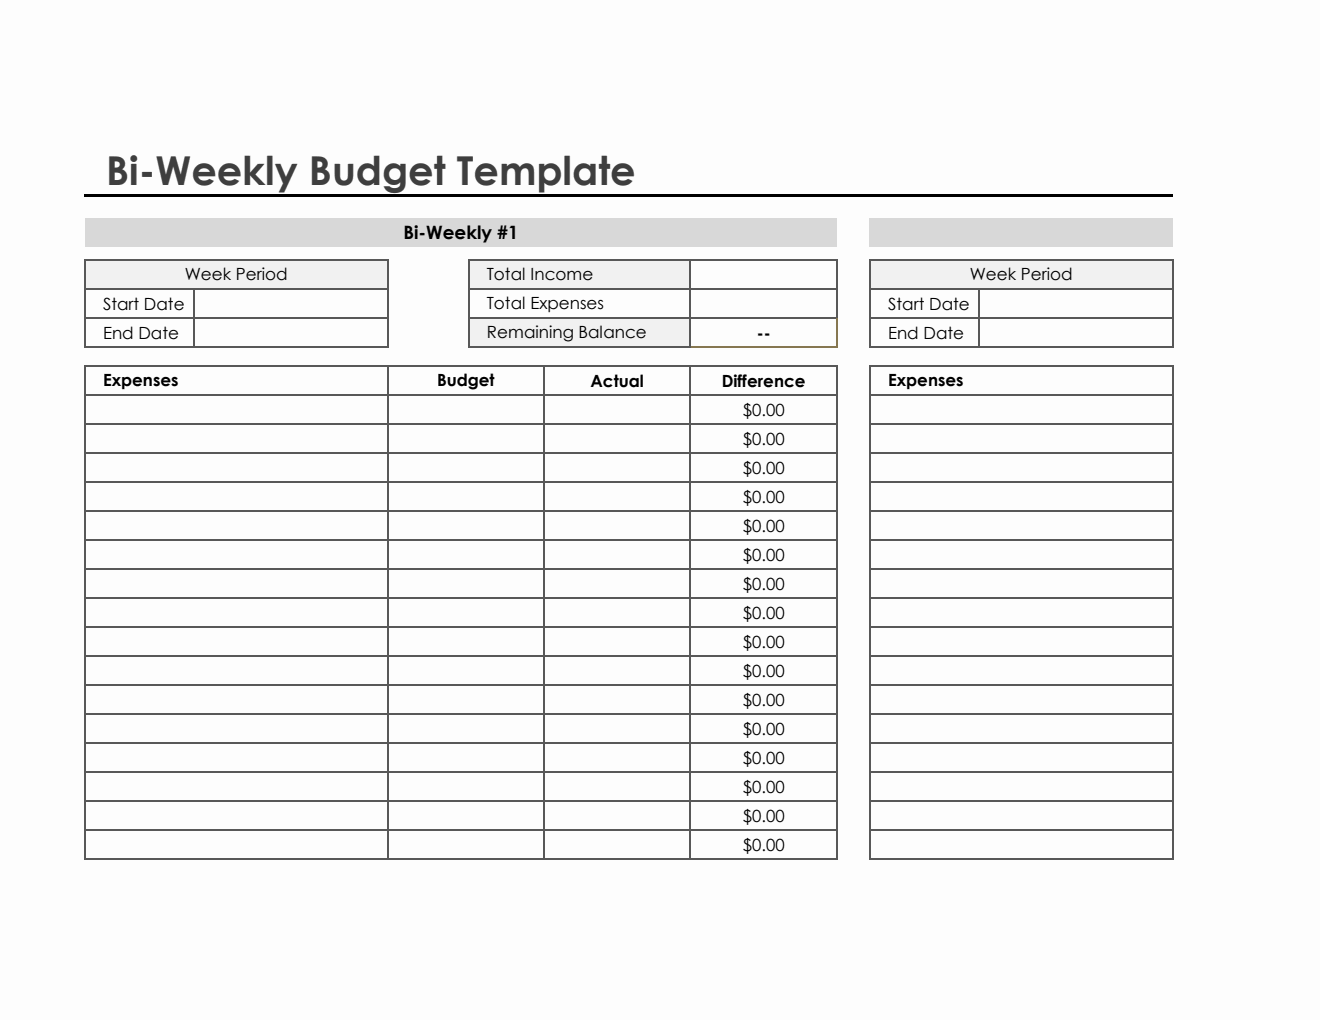 biweekly-budget-template-in-excel-simple